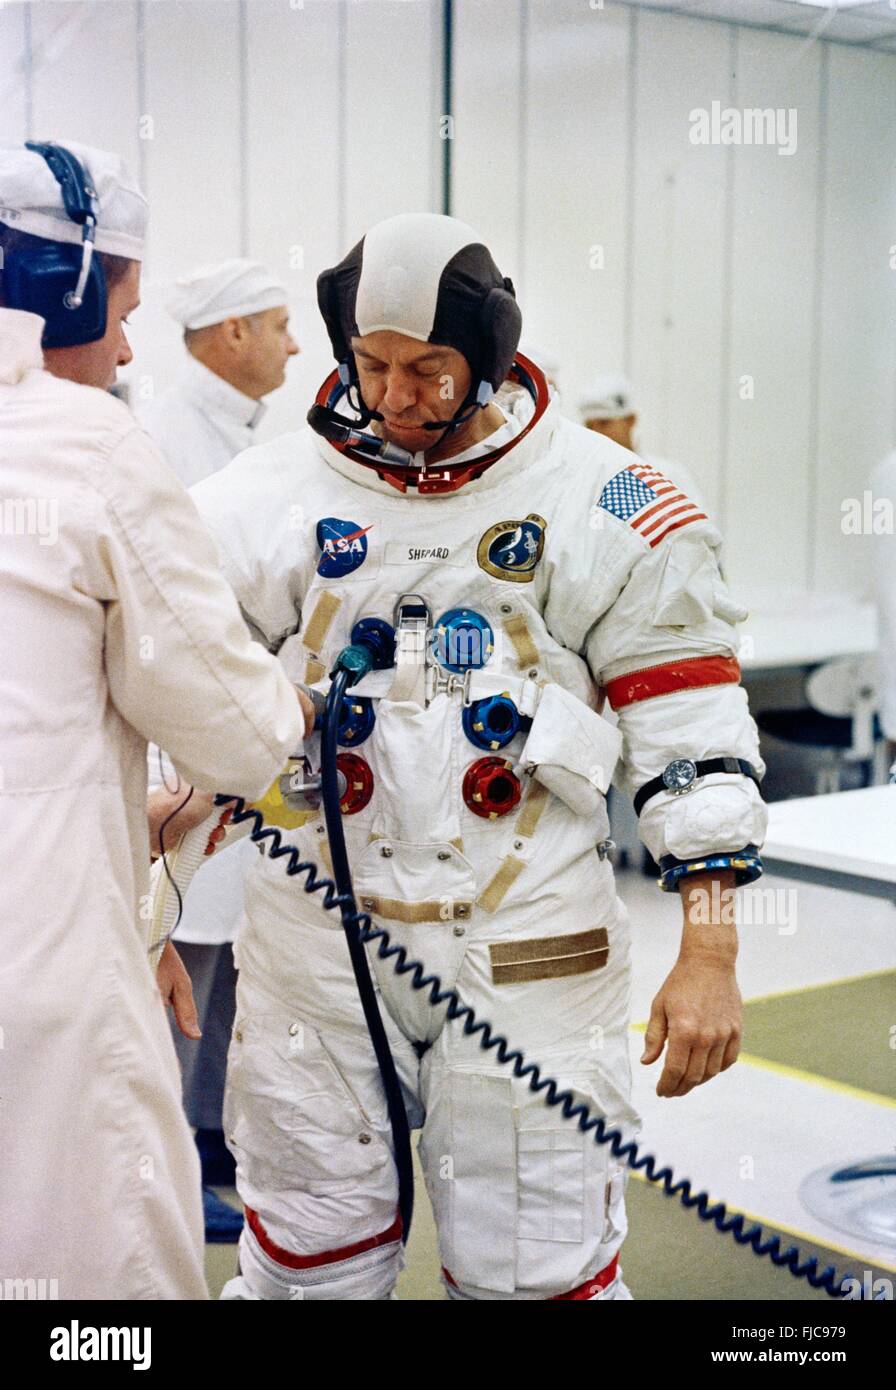 NASA astronauta del Apolo 14 el Comandante Alan B. Shepard Jr., es asistido en poner en su traje espacial en el Centro Espacial Kennedy durante el Apolo 14 prelaunch cuenta regresiva para la misión lunar el 31 de enero de 1971 en Cabo Cañaveral, Florida. Foto de stock